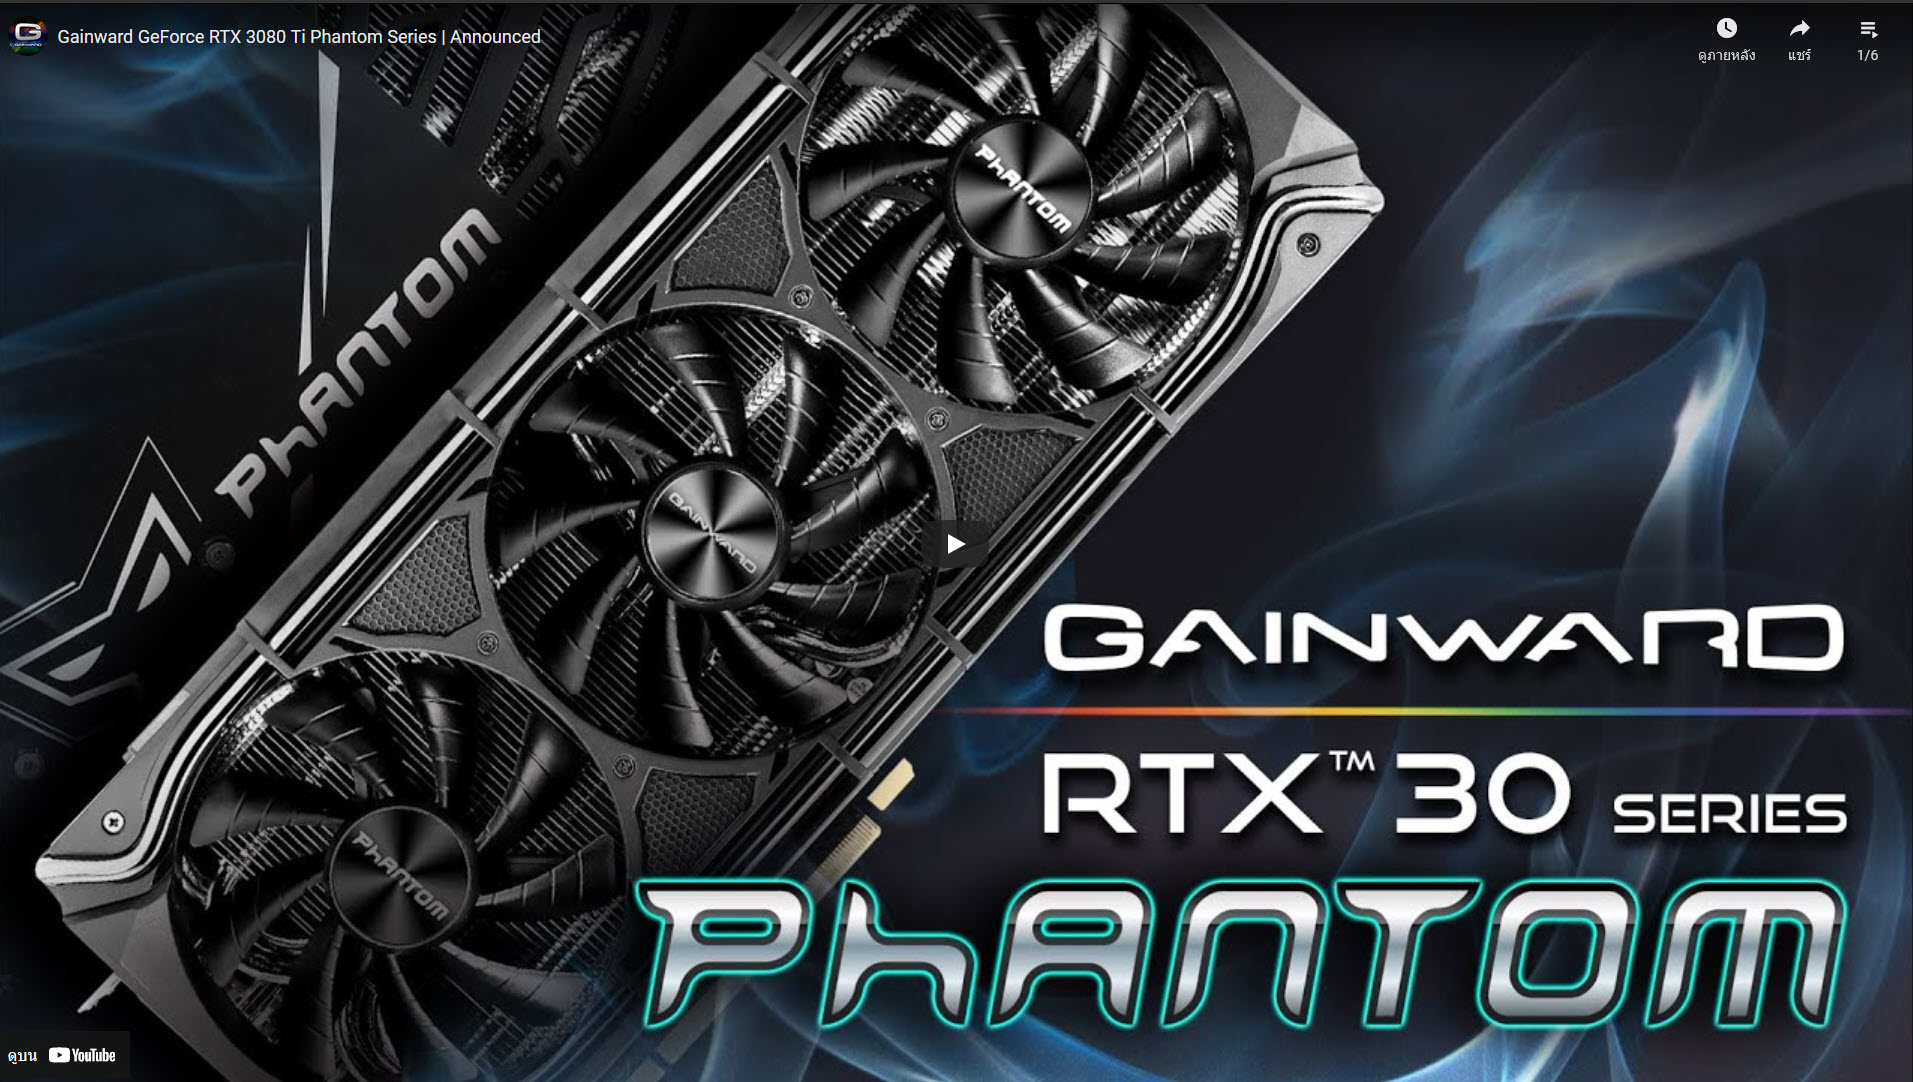 2021 08 13 11 42 19 Gainward ประกาศเปิดตัวการ์ดจอ Gainward GeForce RTX 3080 Ti Phantom รุ่นใหม่ล่าสุดและ GAINWARD GeForce RTX 30 Phantom Series ทุกรุ่นอย่างเป็นทางการ พร้อมดีไซน์ที่สวยงามอลังการและชุดระบายความร้อน Phantom cooler แบบใหม่ล่าสุดที่เย็นเฉียบถึงใจ